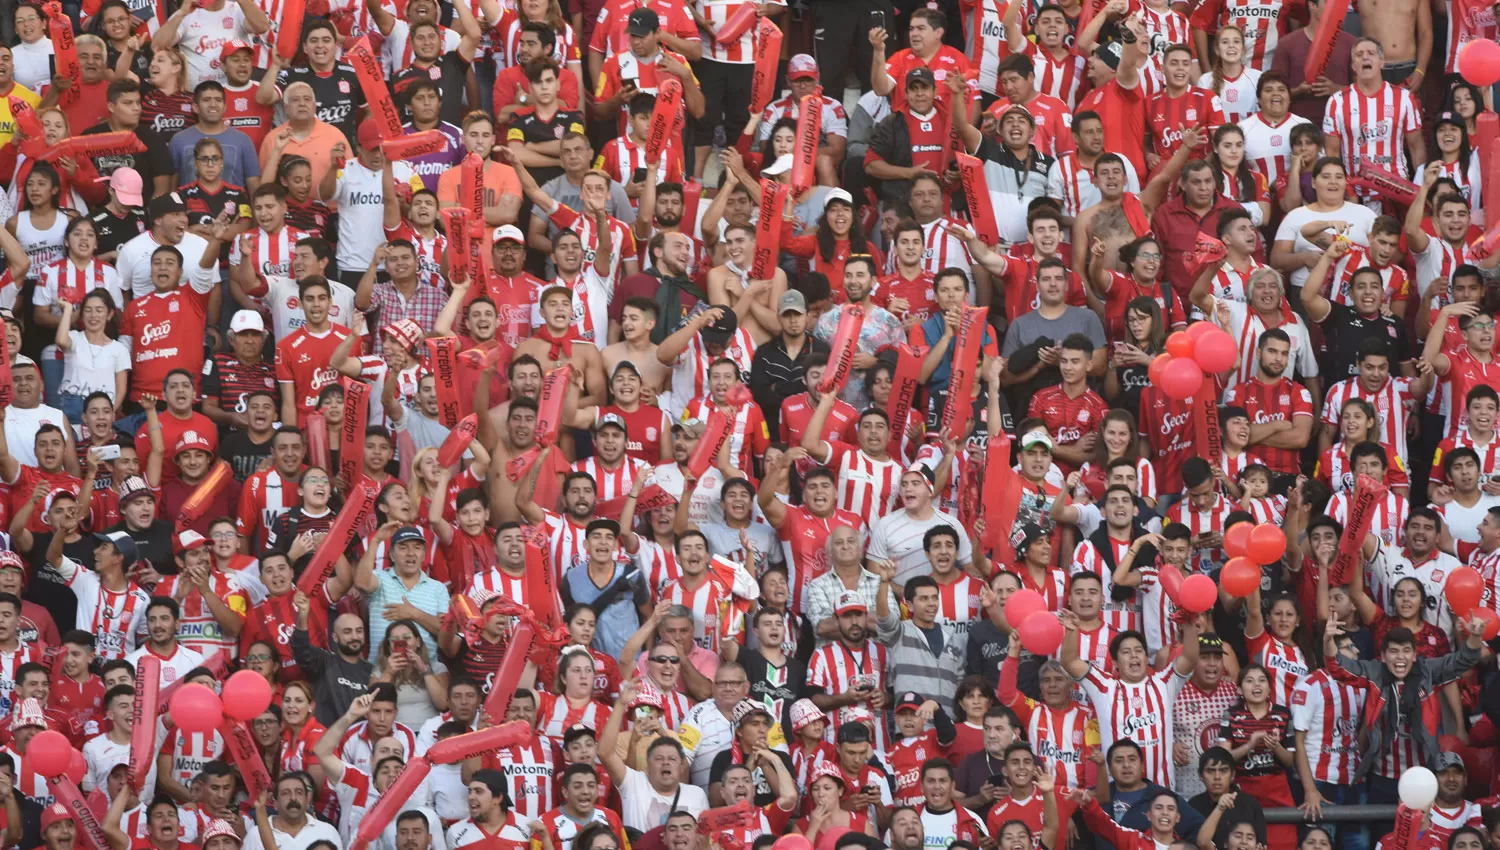 Los hinchas aplaudieron al equipo a pesar del descenso. LA GACETA/FOTO DE JUAN PABLO SÁNCHEZ NOLI